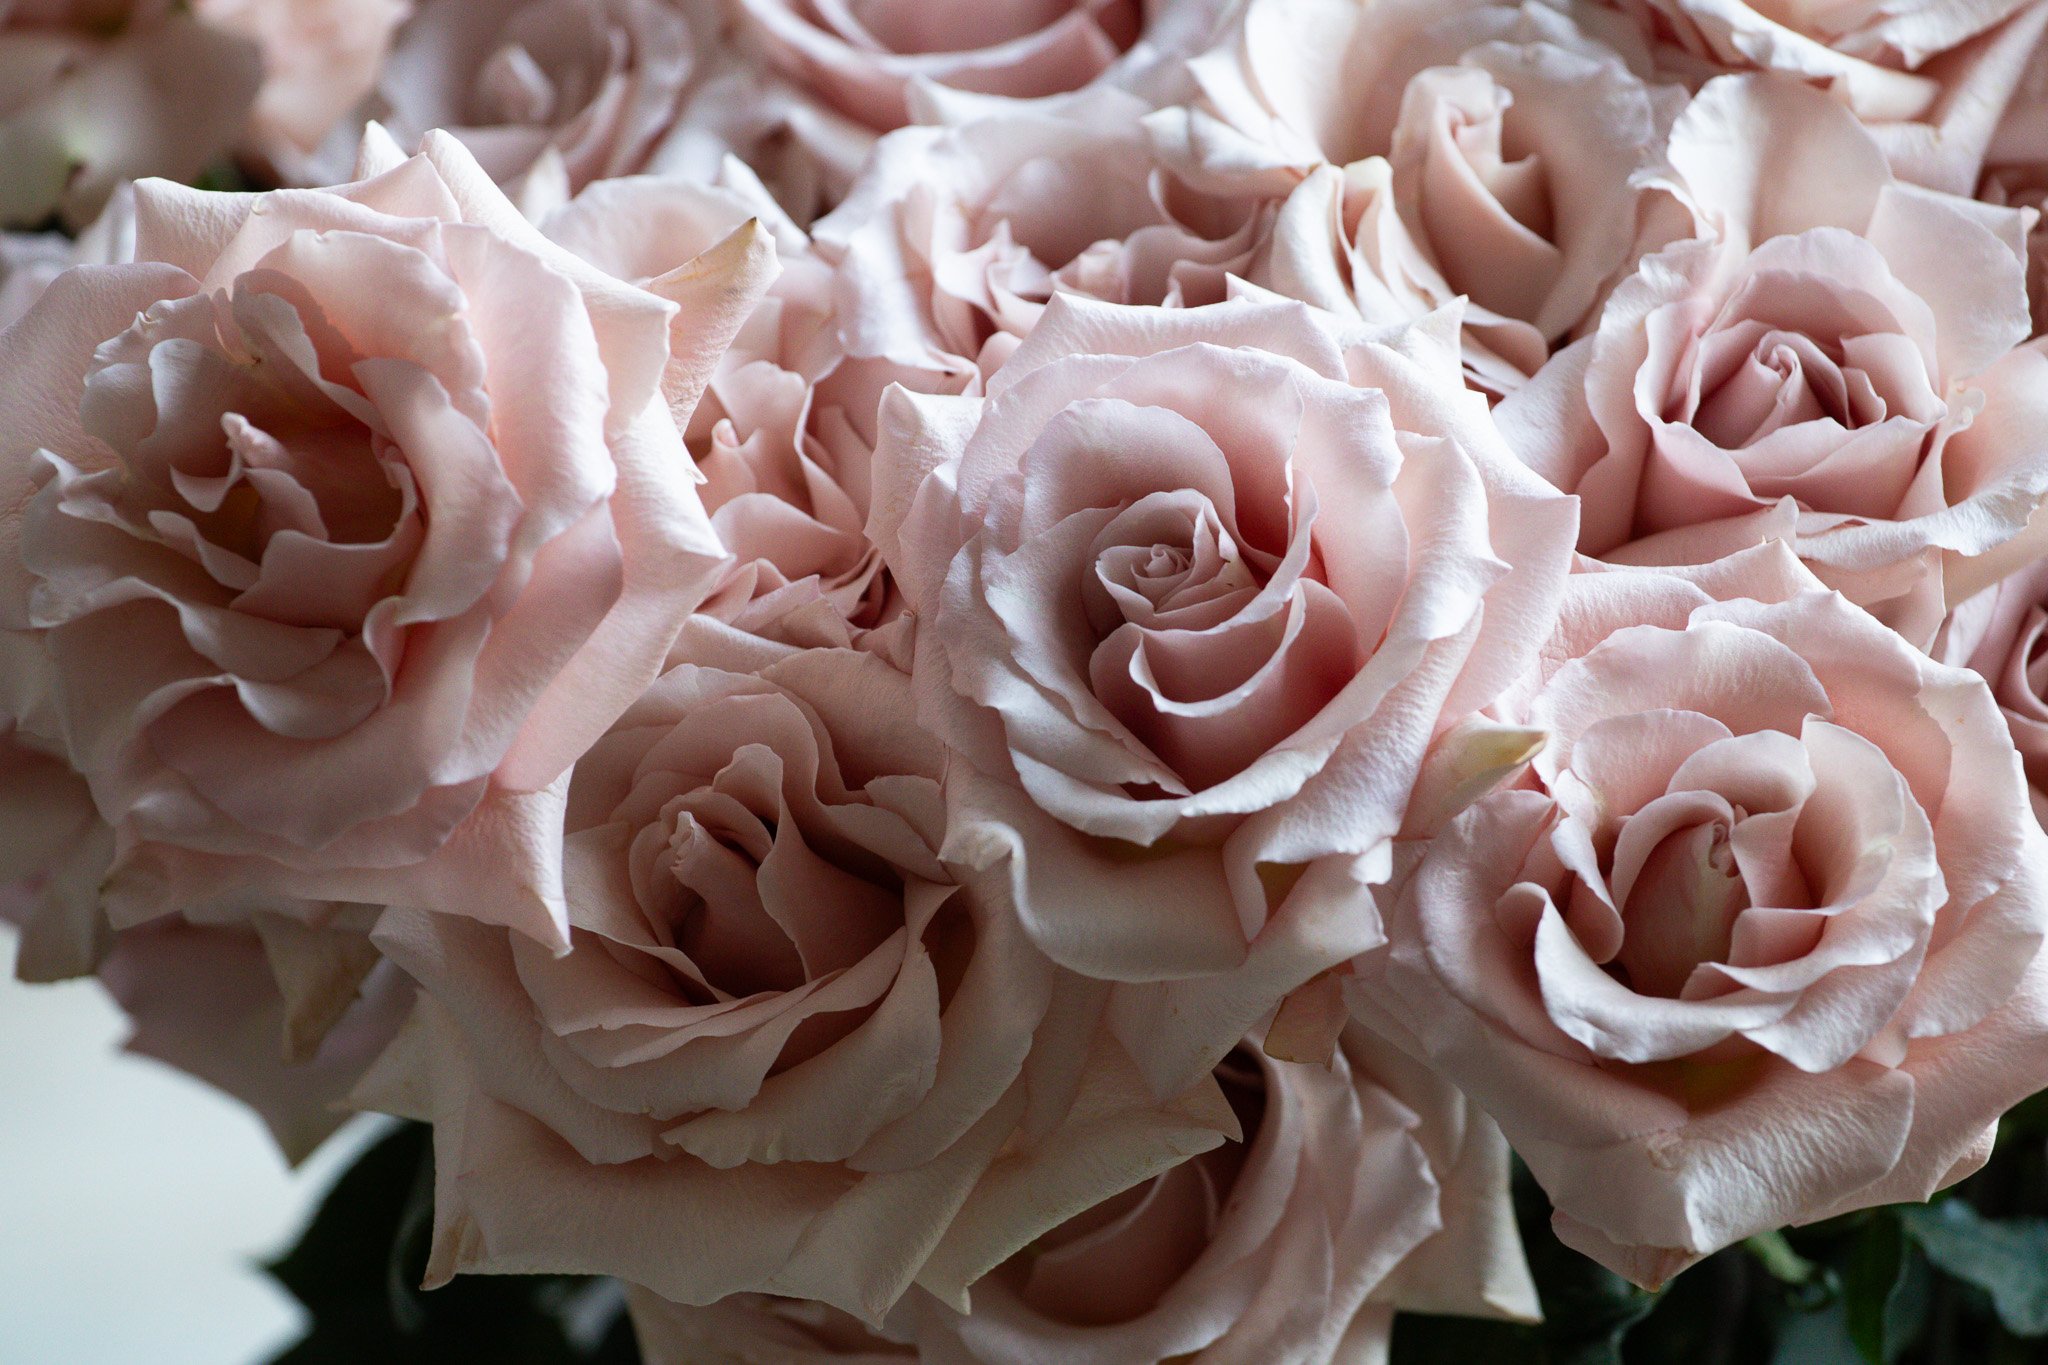 Romantic pink rose petals